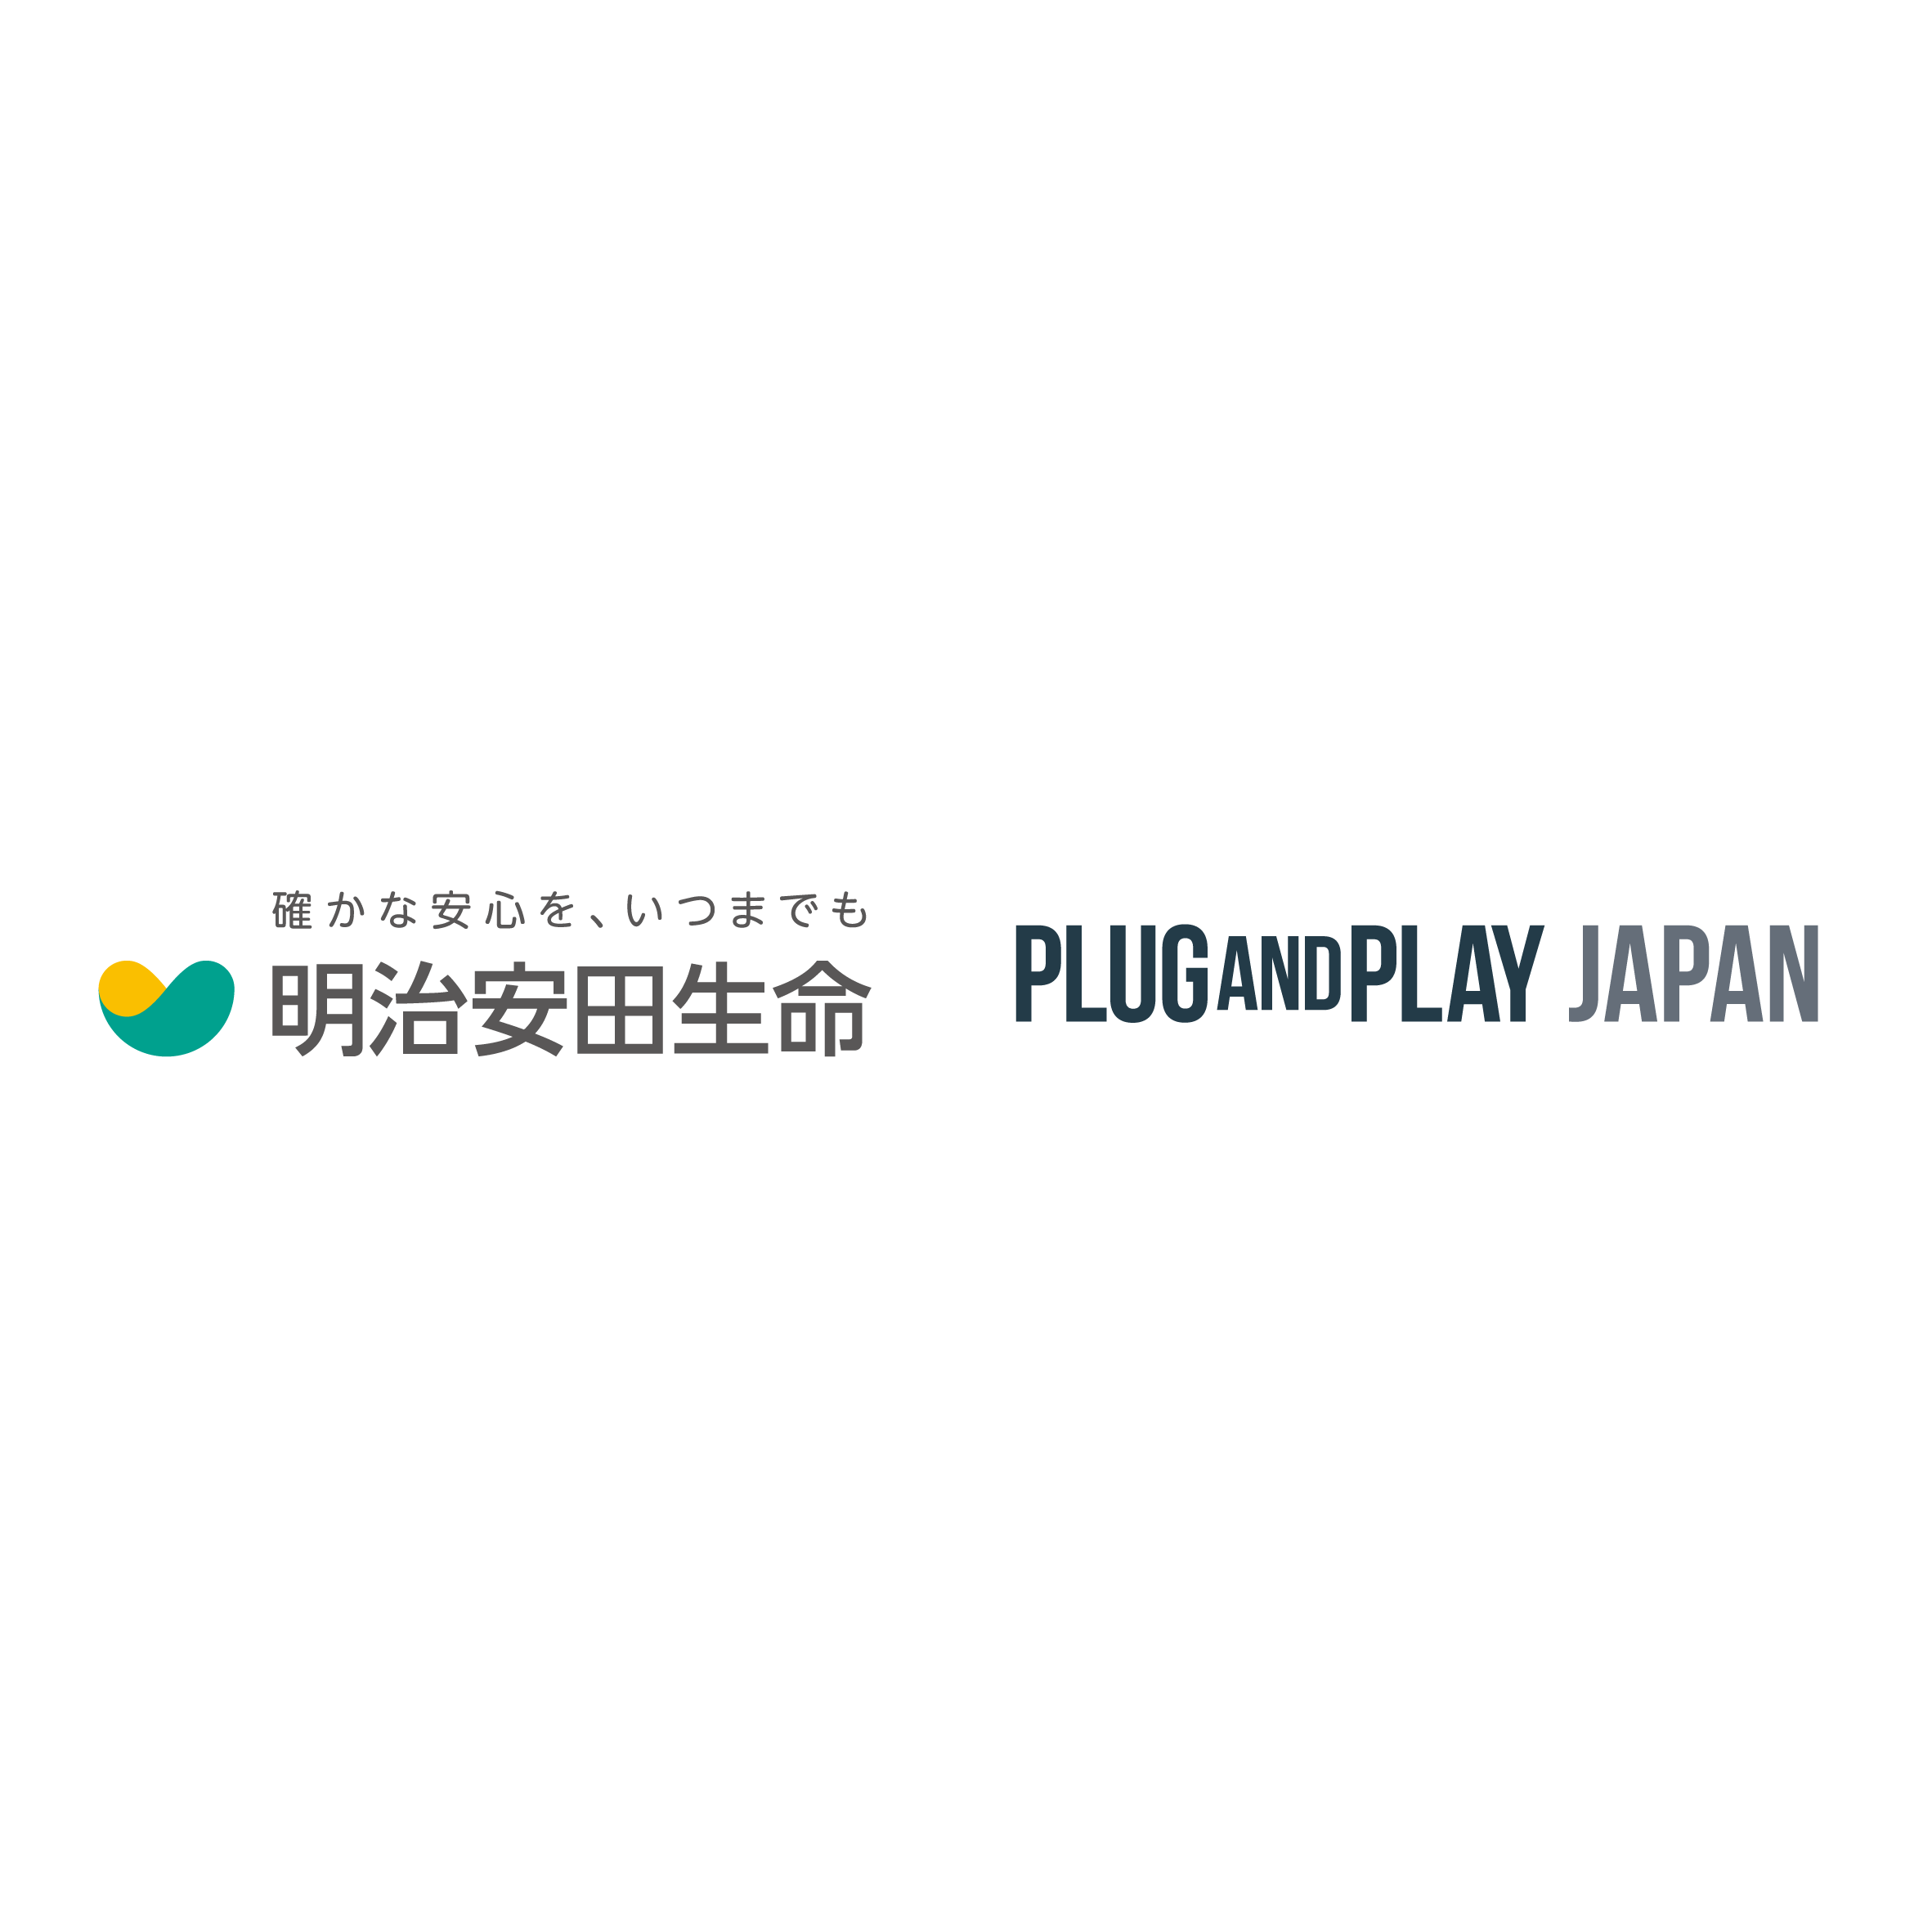 Plug And Play Japan 明治安田生命とinsurtech 分野における アンカー パートナーシップ を締結 Plug And Play Japan株式会社のプレスリリース